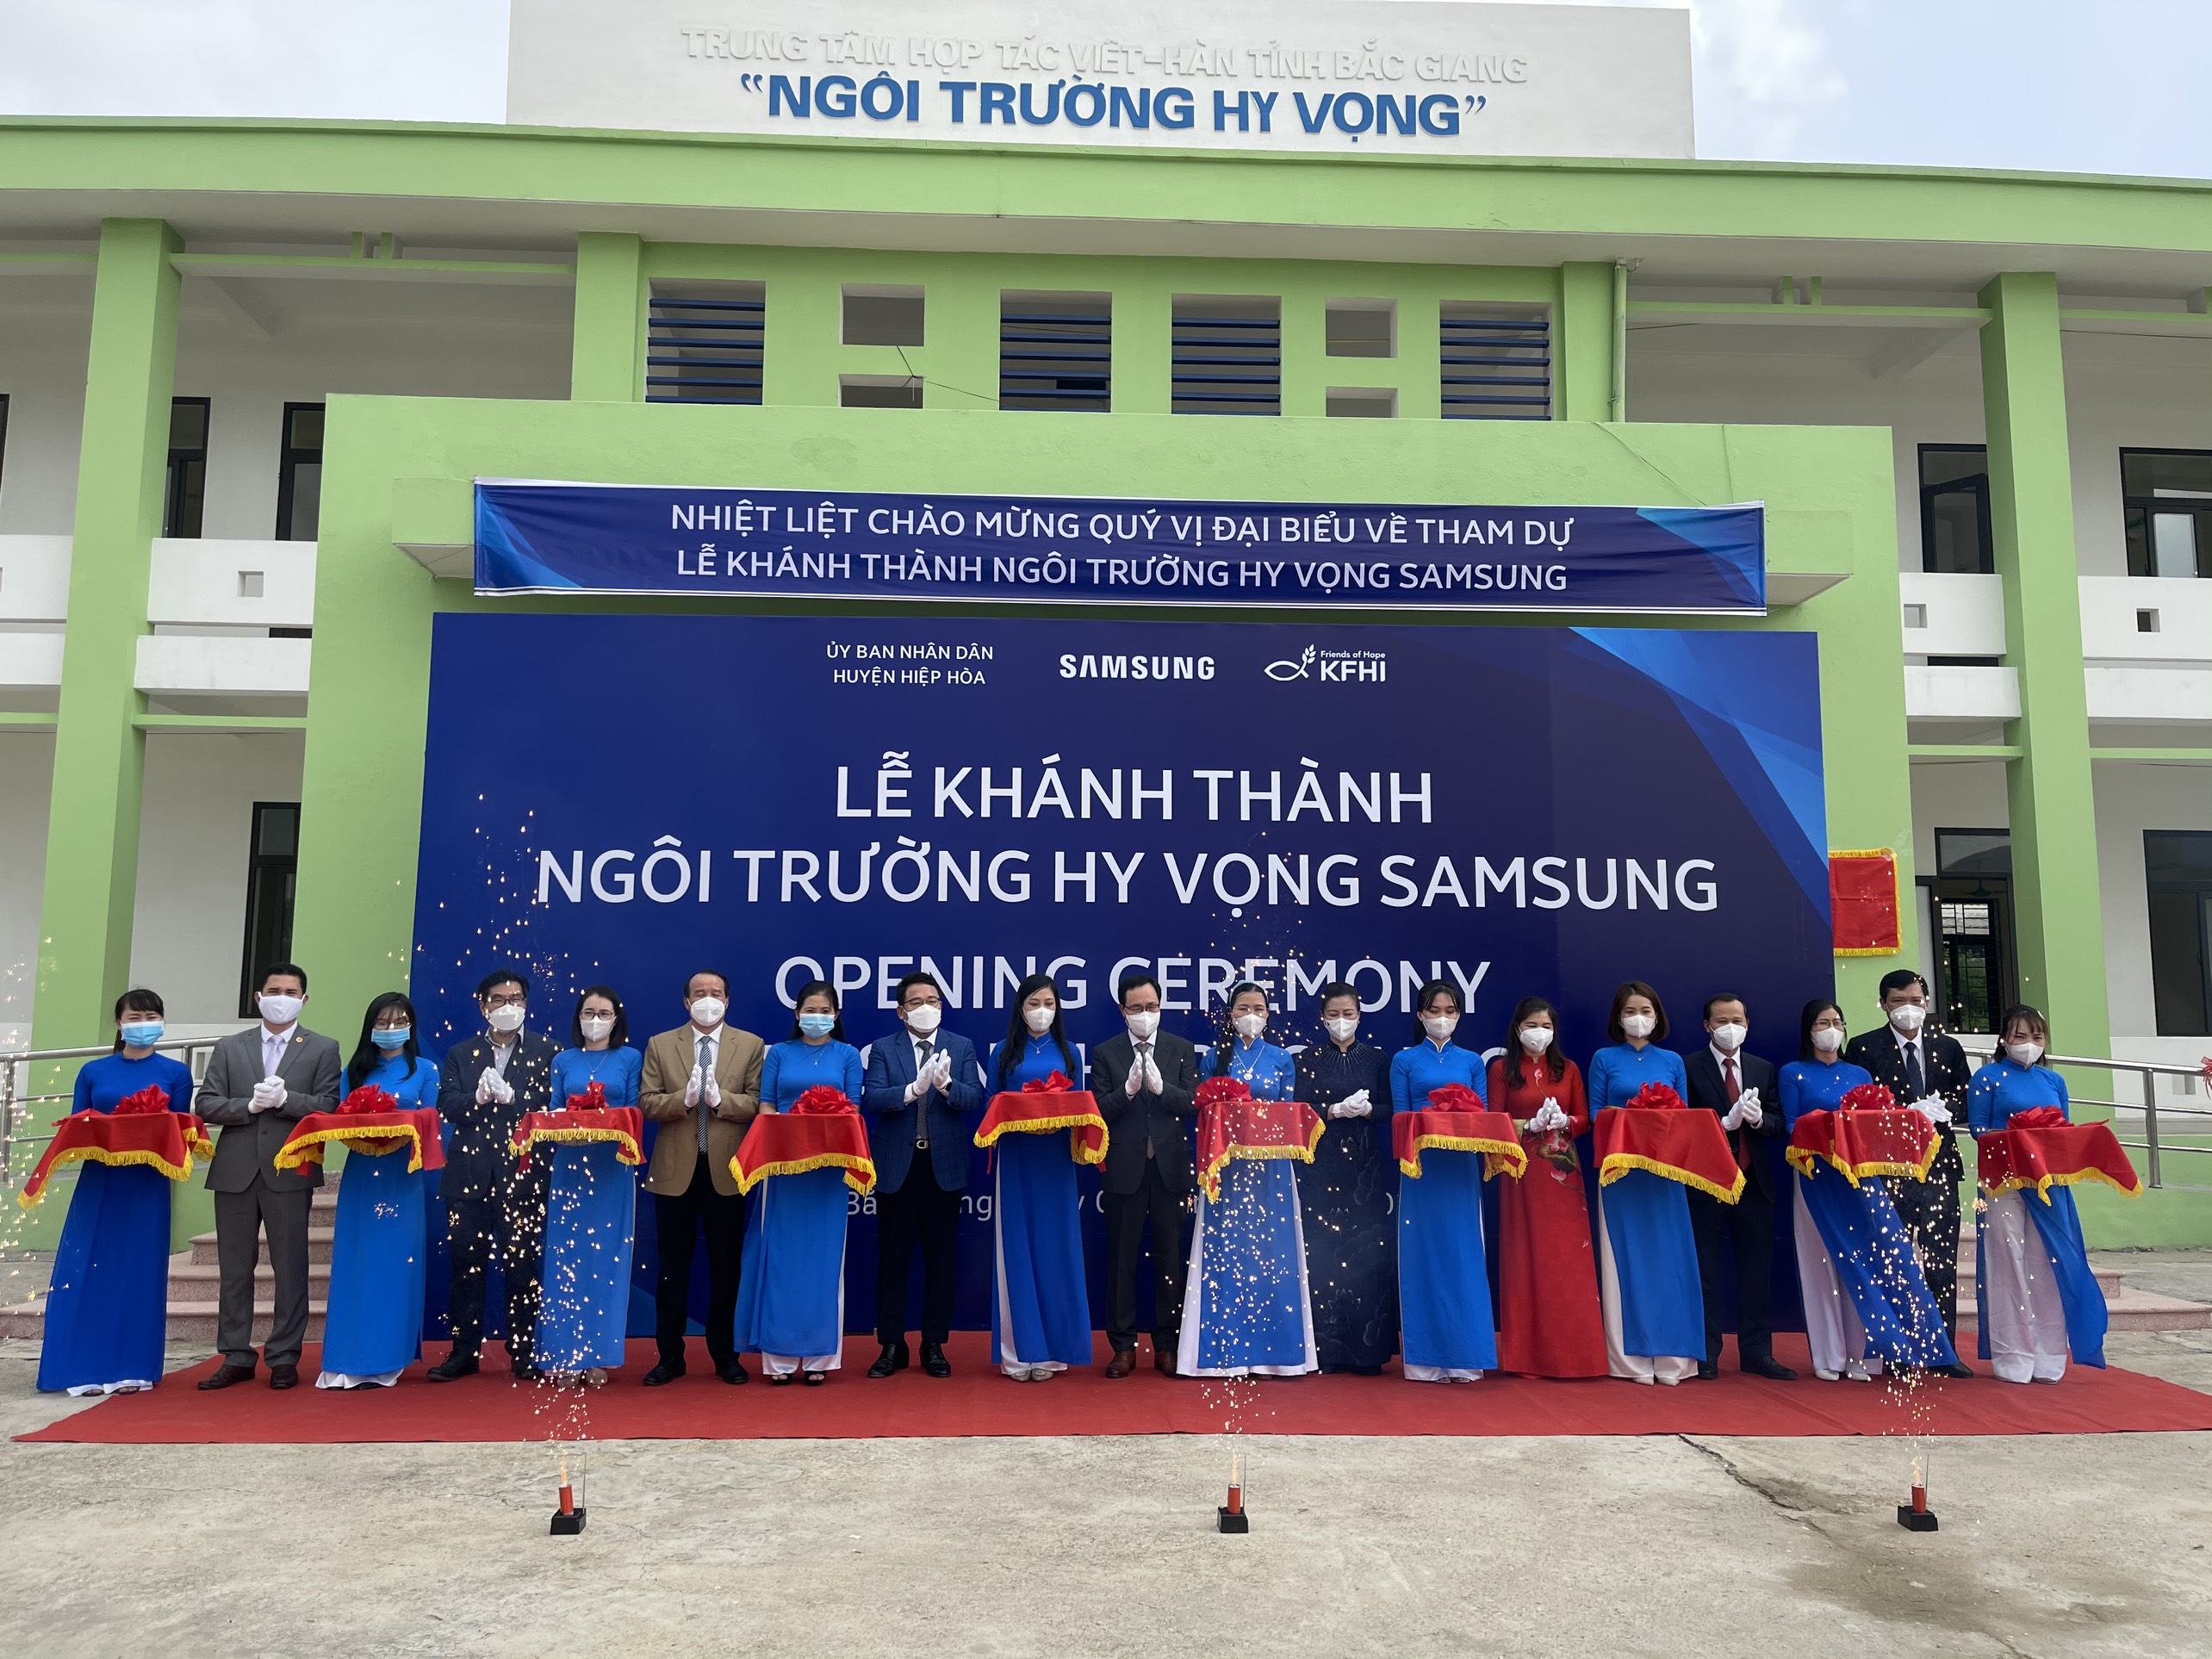 Bắc Giang: Khánh thành Ngôi trường Hy vọng Samsung